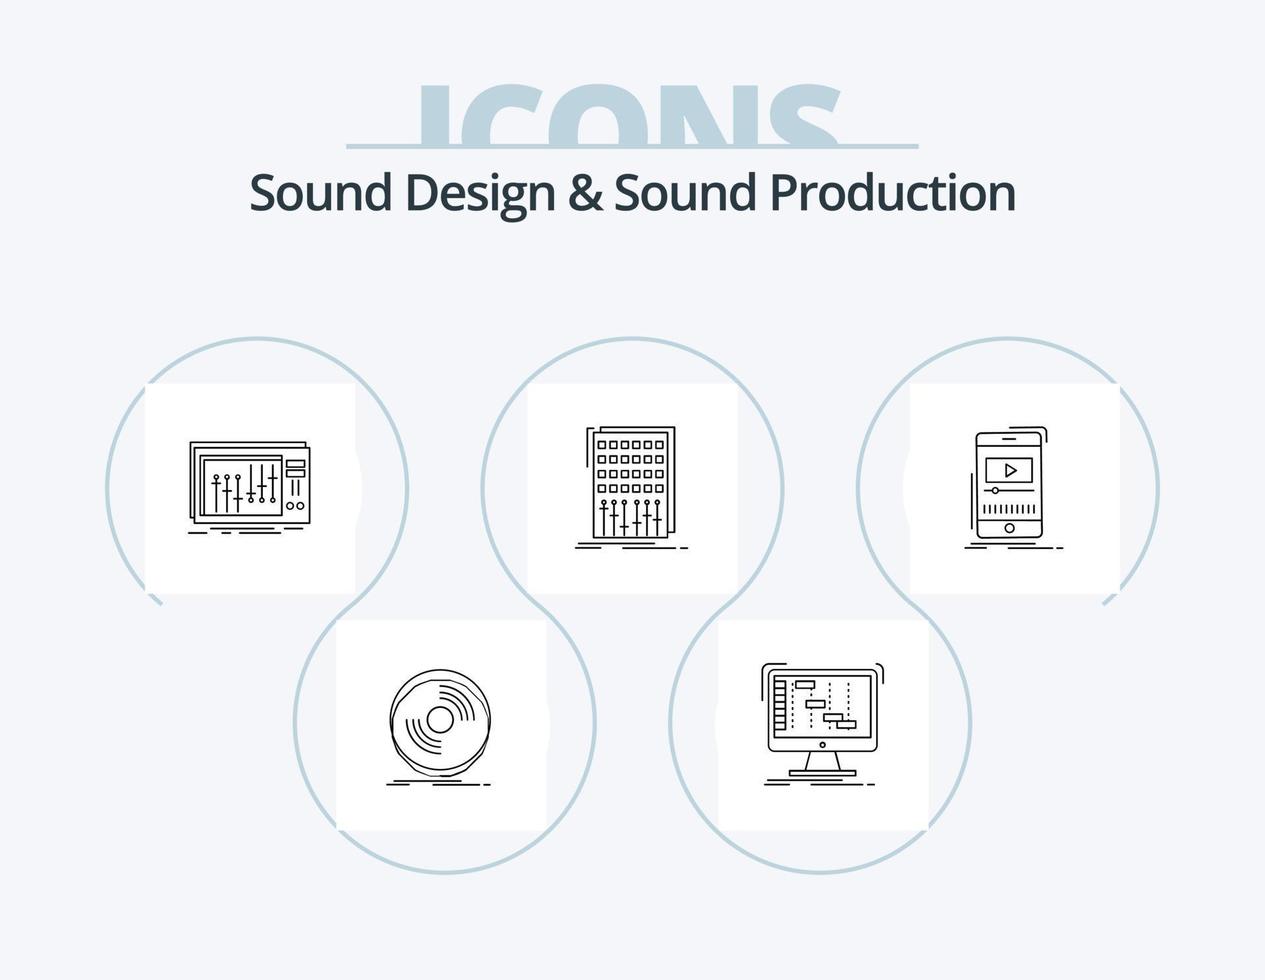 conception sonore et ligne de production sonore pack d'icônes 5 conception d'icônes. instrument. tambouriner. conférencier. son. module vecteur